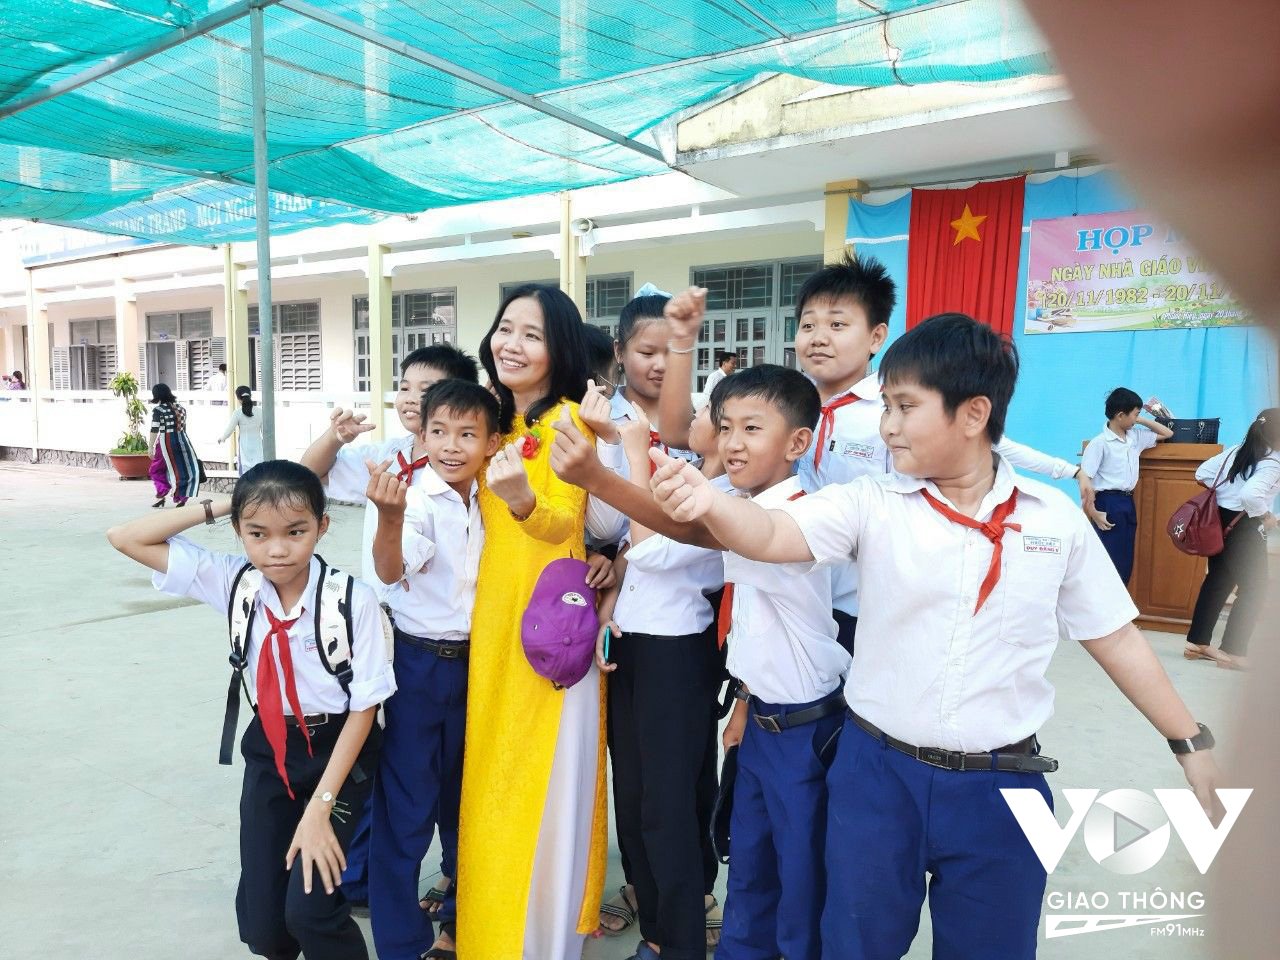 Đến huyện Mỏ Cày Bắc, tỉnh Bến Tre, hỏi về cô giáo Ngô Song Đào, rất nhiều học sinh và bà con đều biết